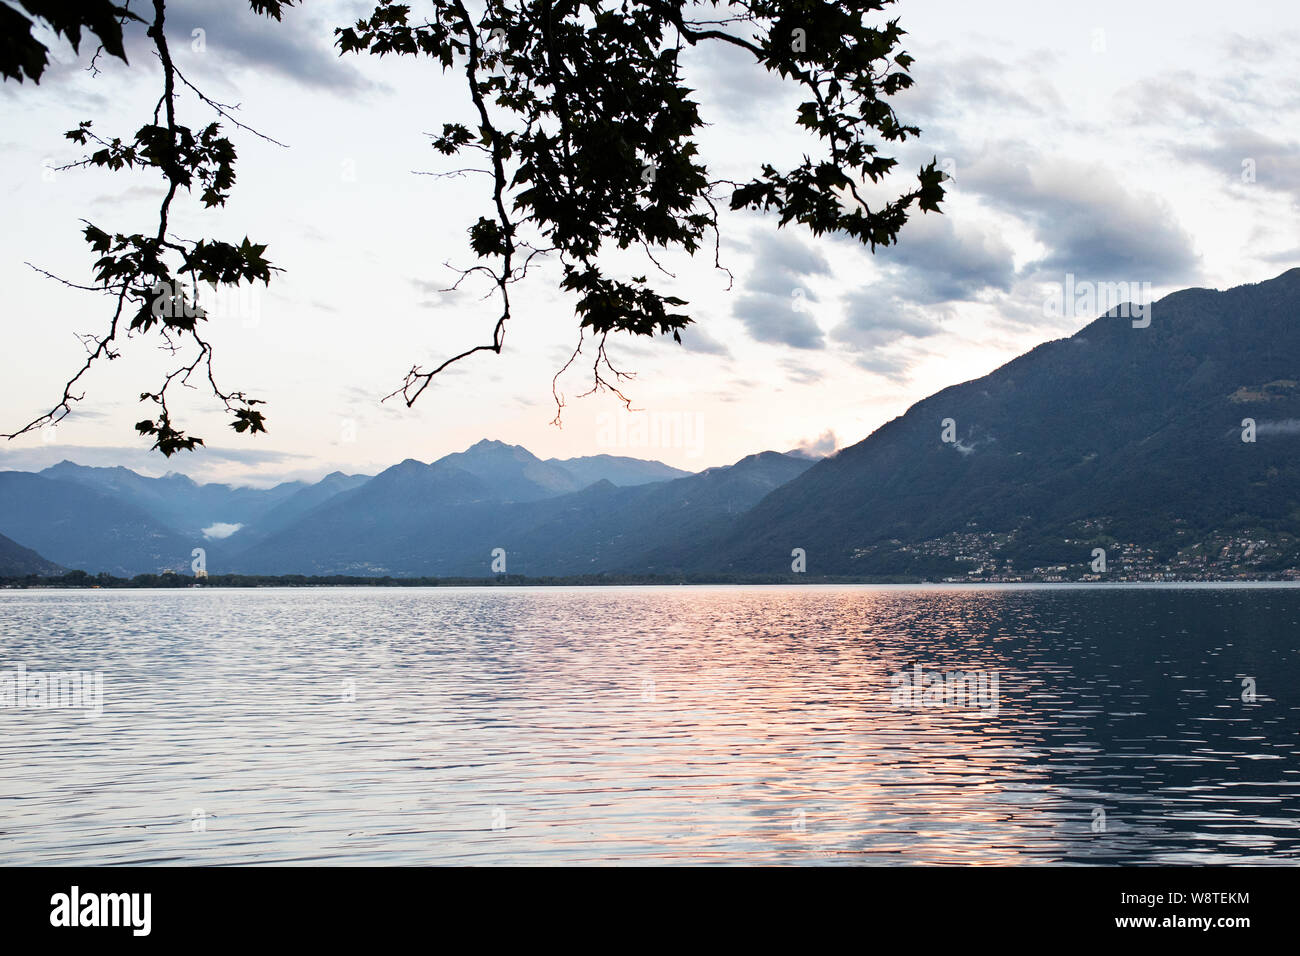 Summer sunset along the Lago Maggiore in the city of Locarno in the Italian region of Ticino in Switzerland. Stock Photo